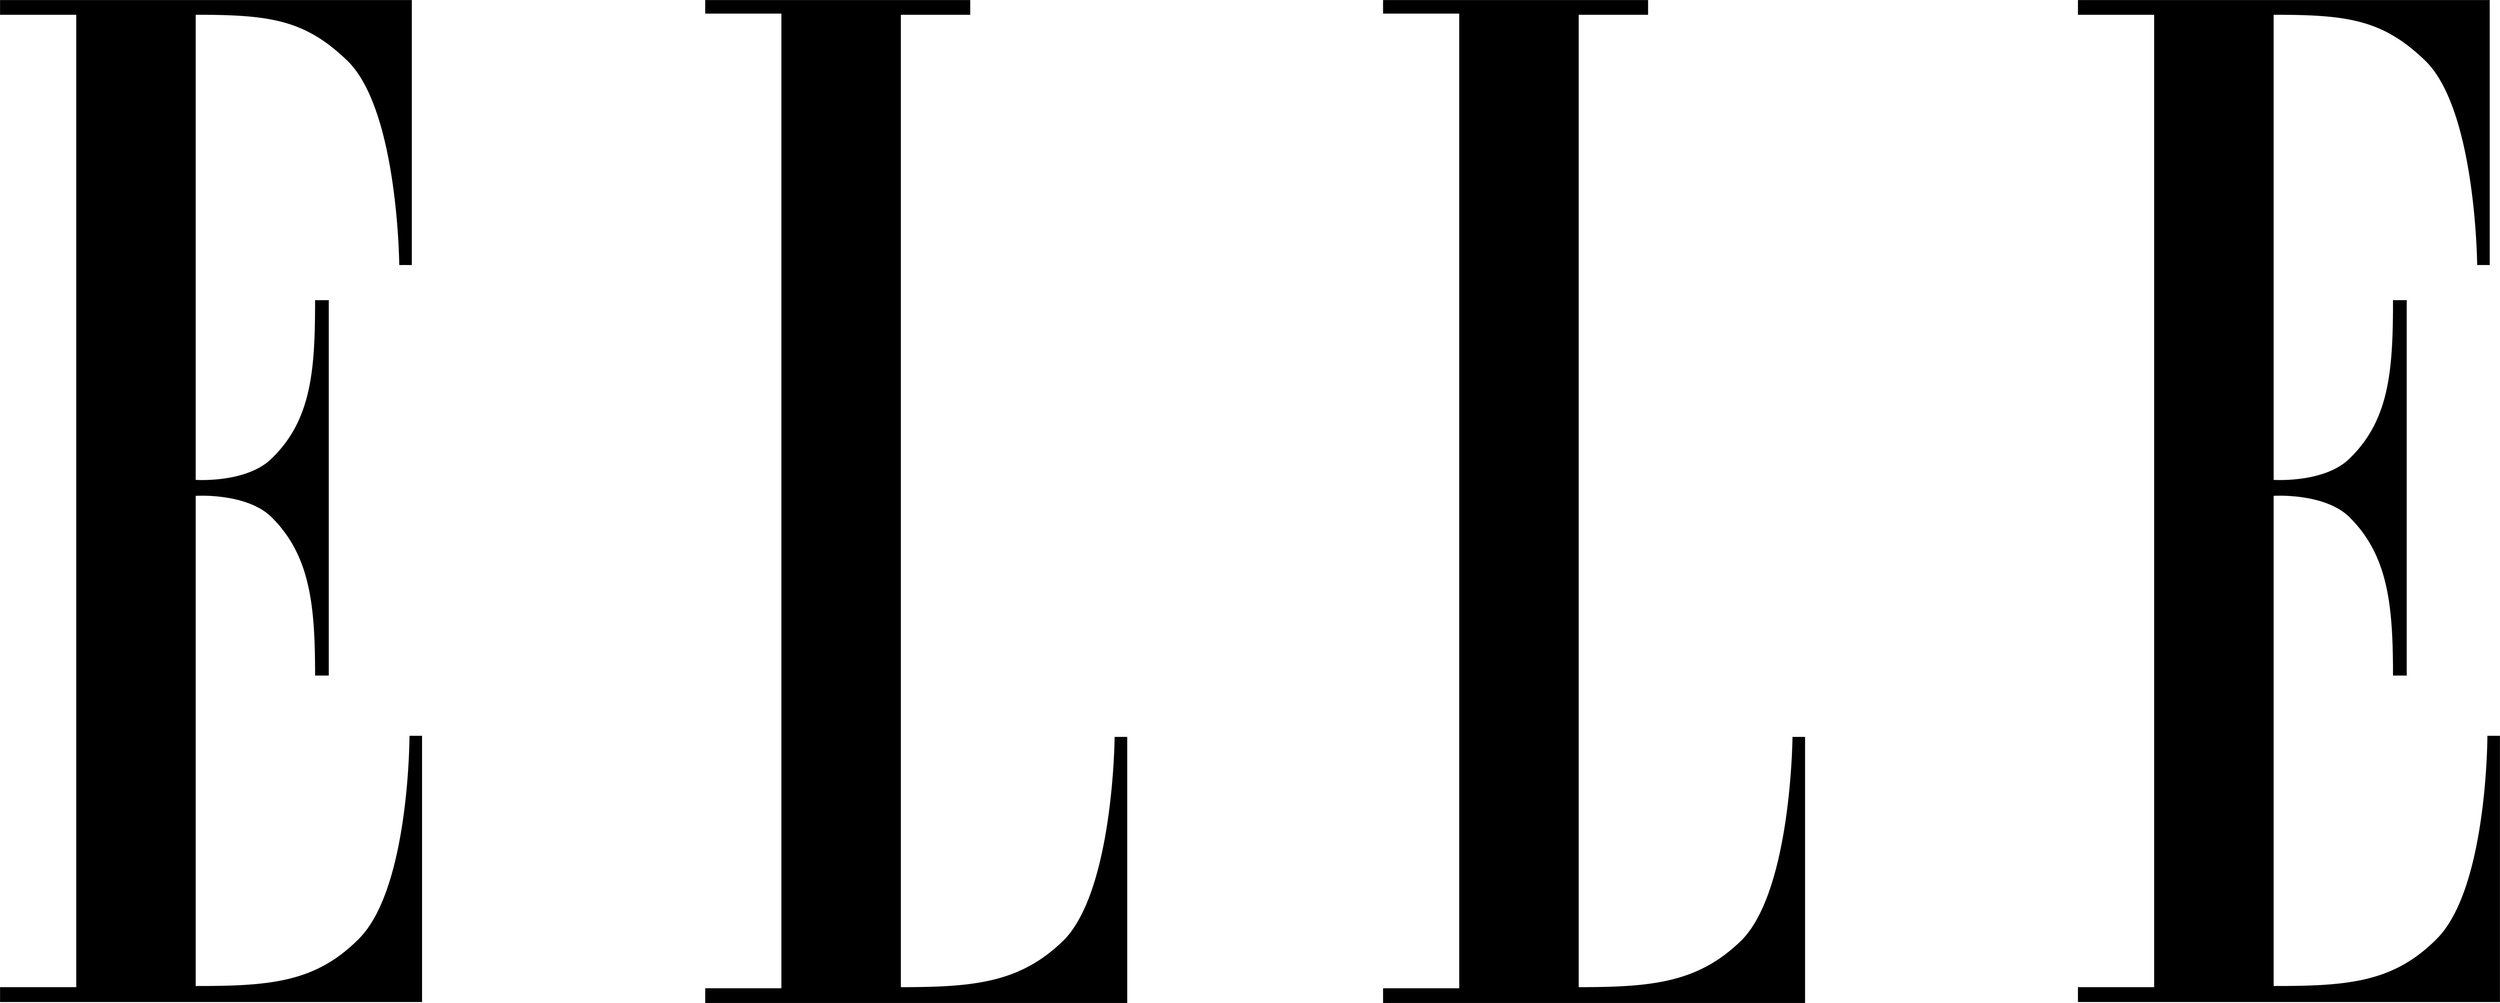 ELLE_Magazine_Logo.jpg